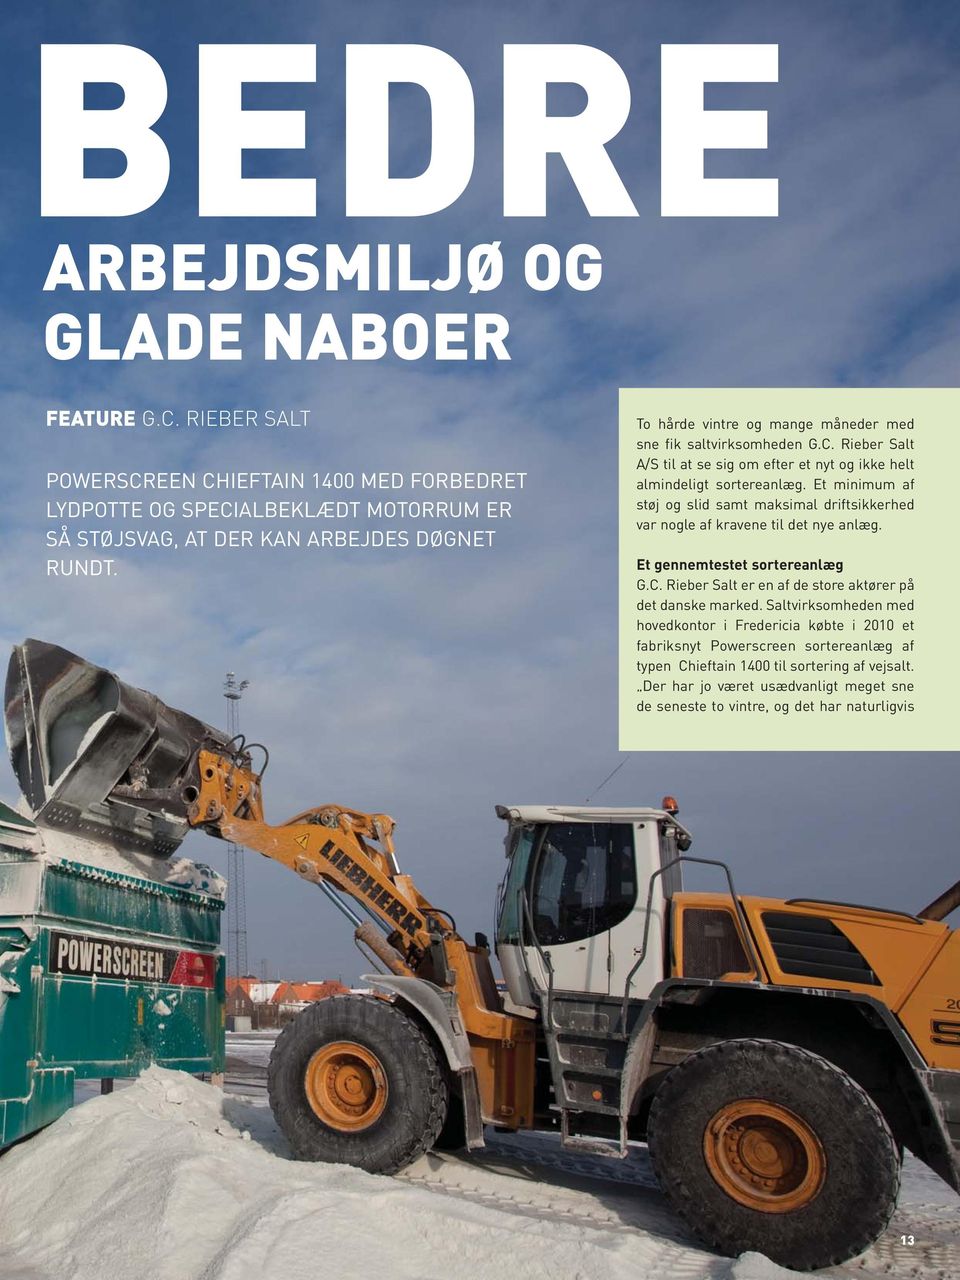 Et minimum af støj og slid samt maksimal driftsikkerhed var nogle af kravene til det nye anlæg. Et gennemtestet sortereanlæg G.C. Rieber Salt er en af de store aktører på det danske marked.